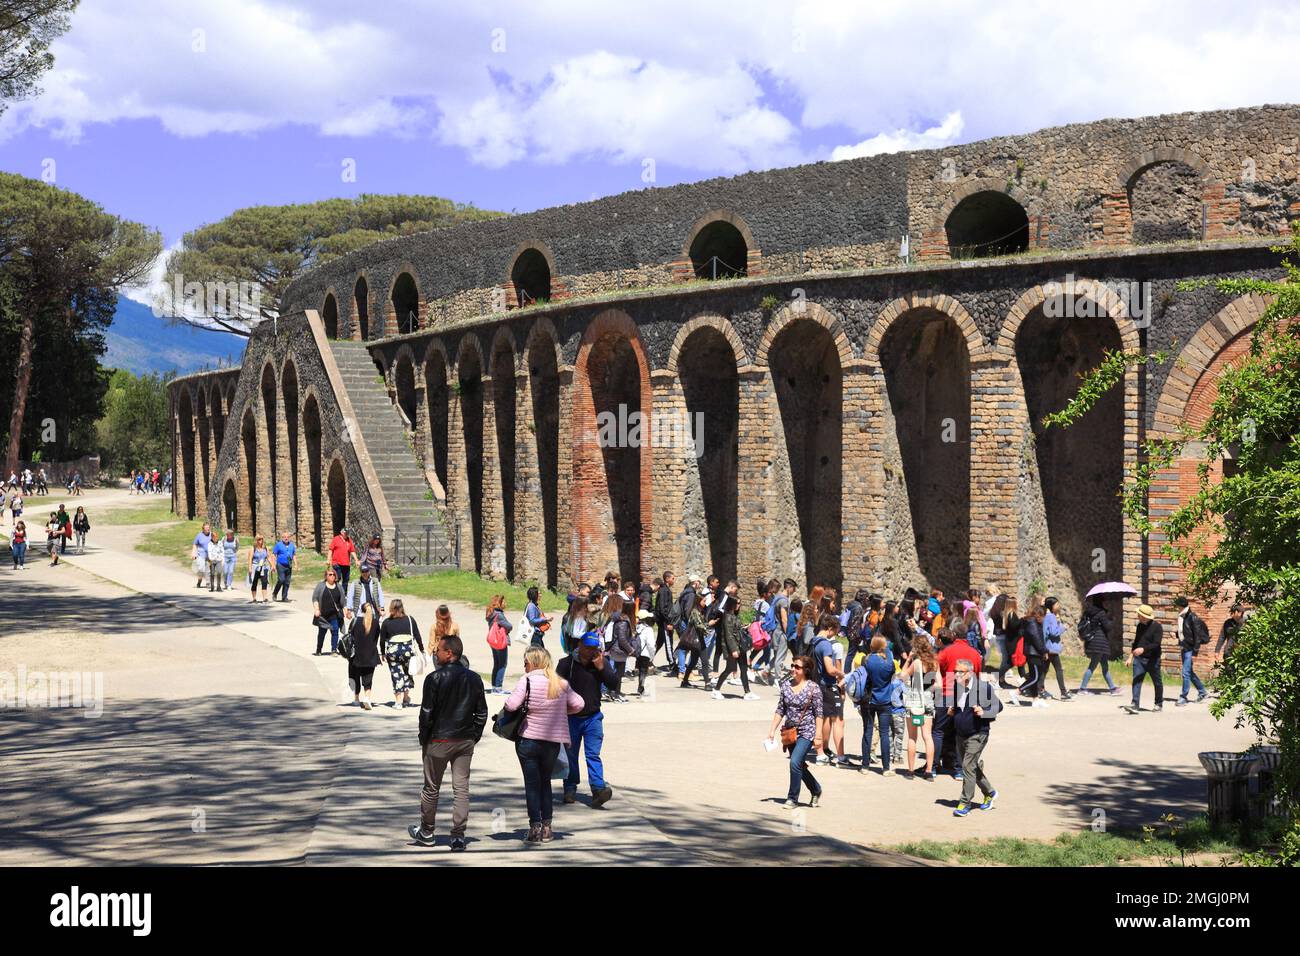 Das Theater, Pompeji, Antike Stadt in Kampanien am Golf von Neapel, beim Ausbruch des Vesuvs im Jahr 79 n. Chr. verschüttet, Italia Foto Stock